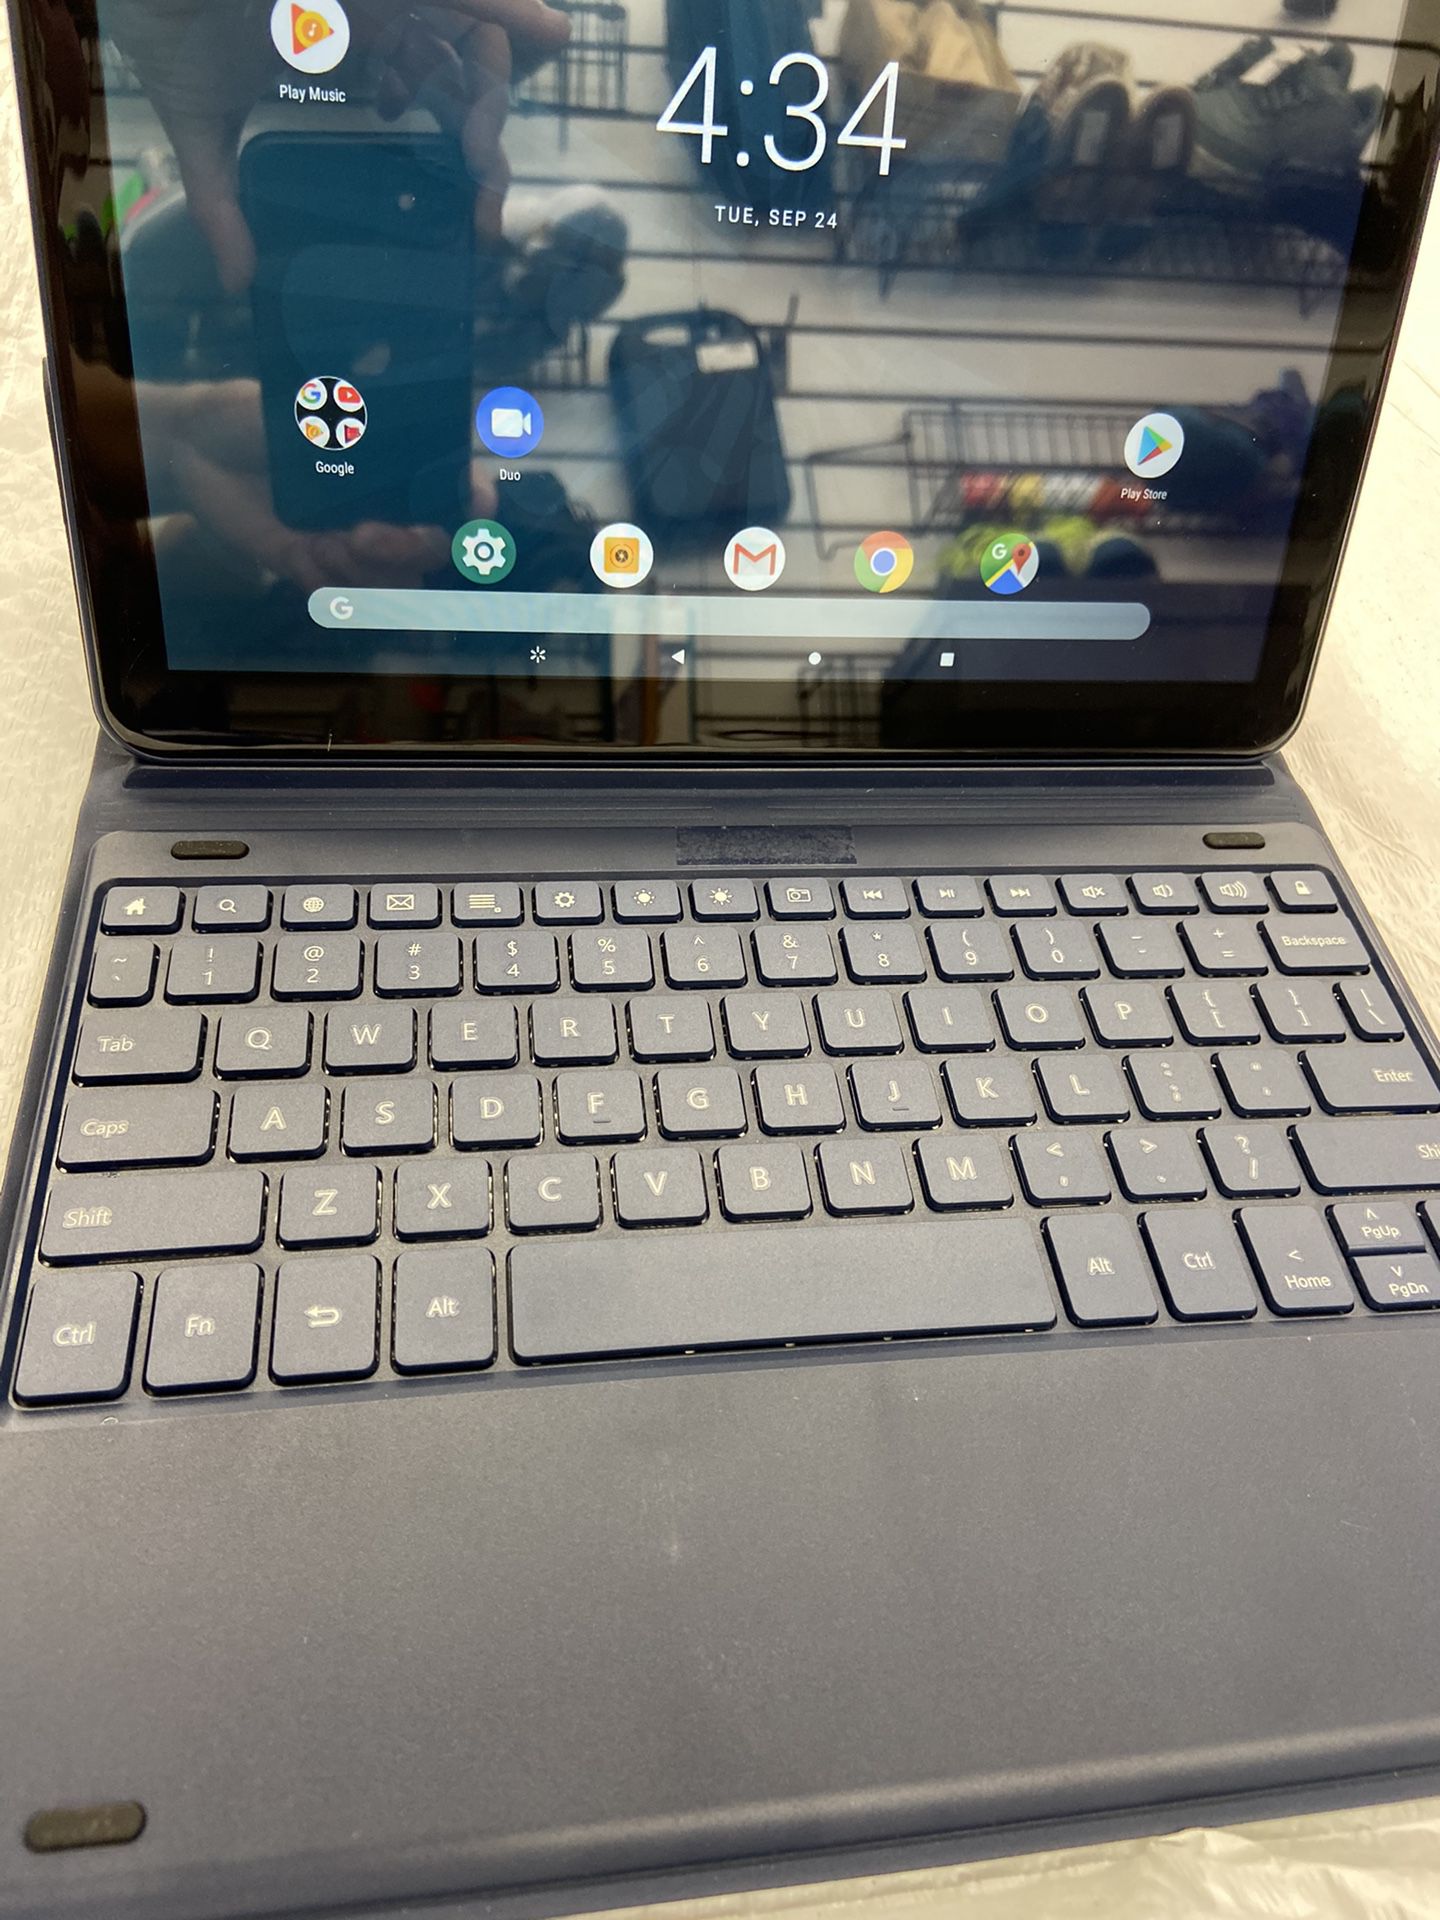 ONN tablet & keyboard